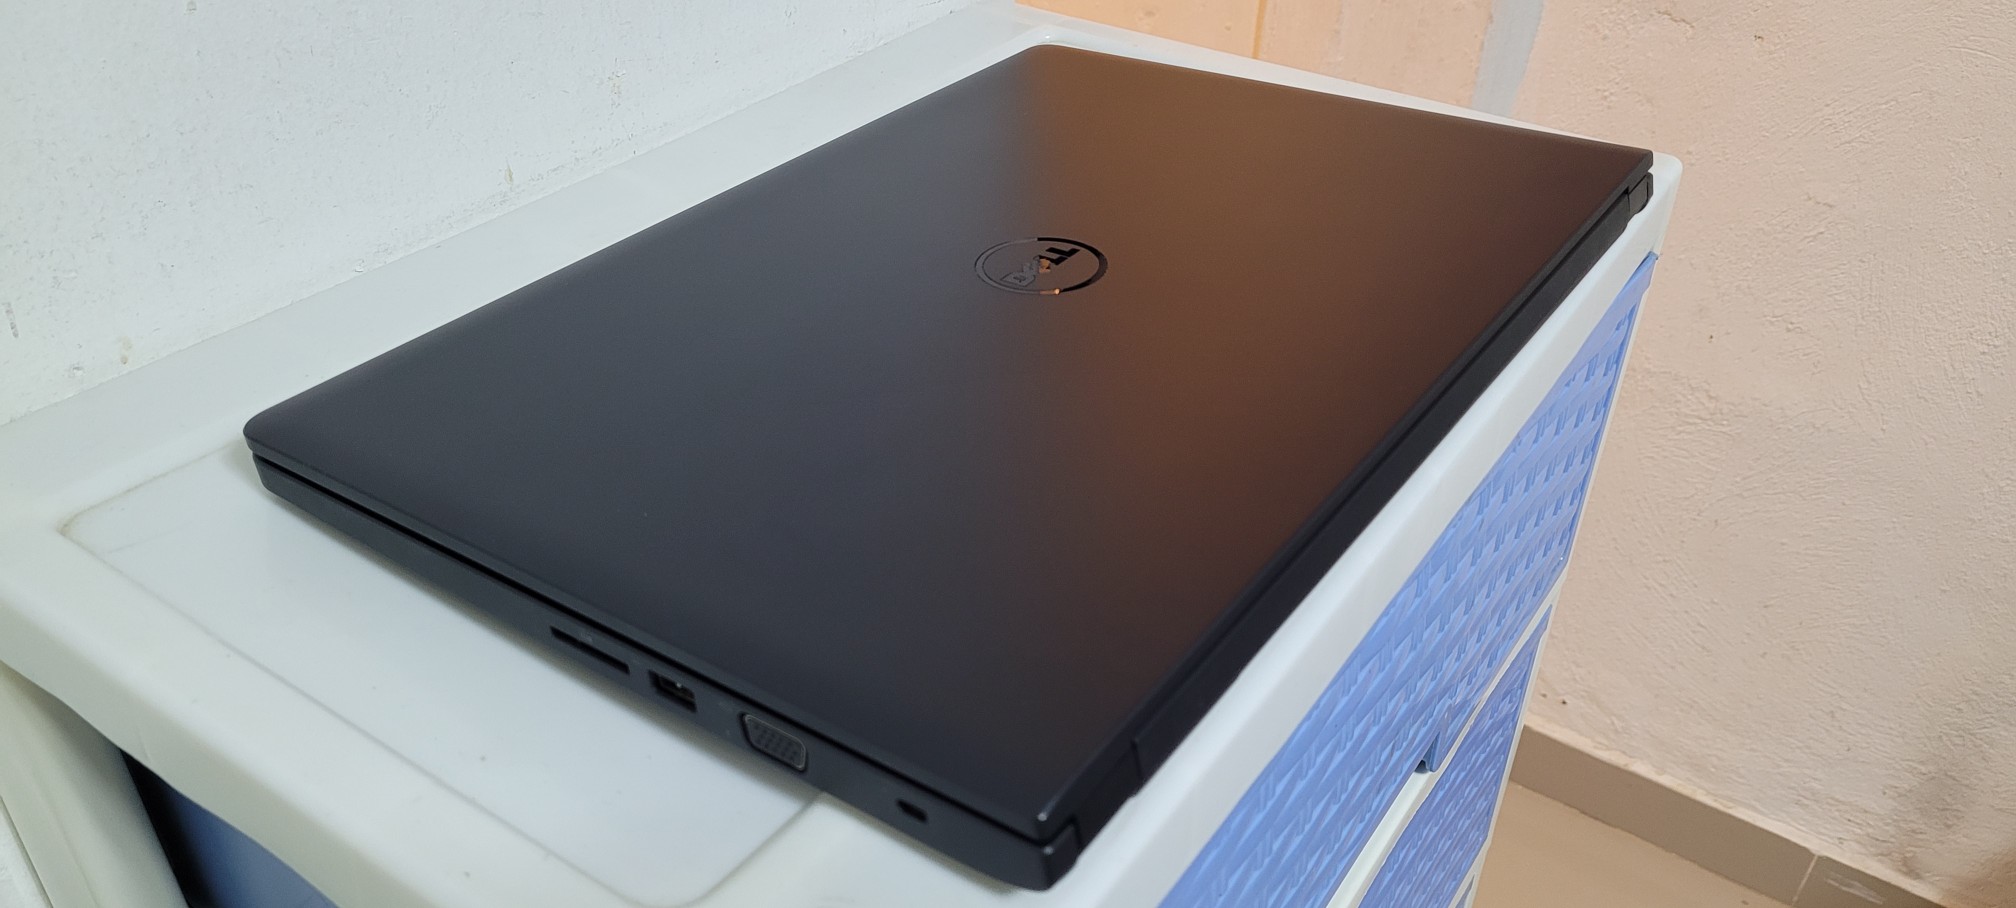 computadoras y laptops - Dell 3590 17 Pulg Core i5 8va Gen Ram 8gb ddr4 Disco 256gb SSD Solido 1080P 2